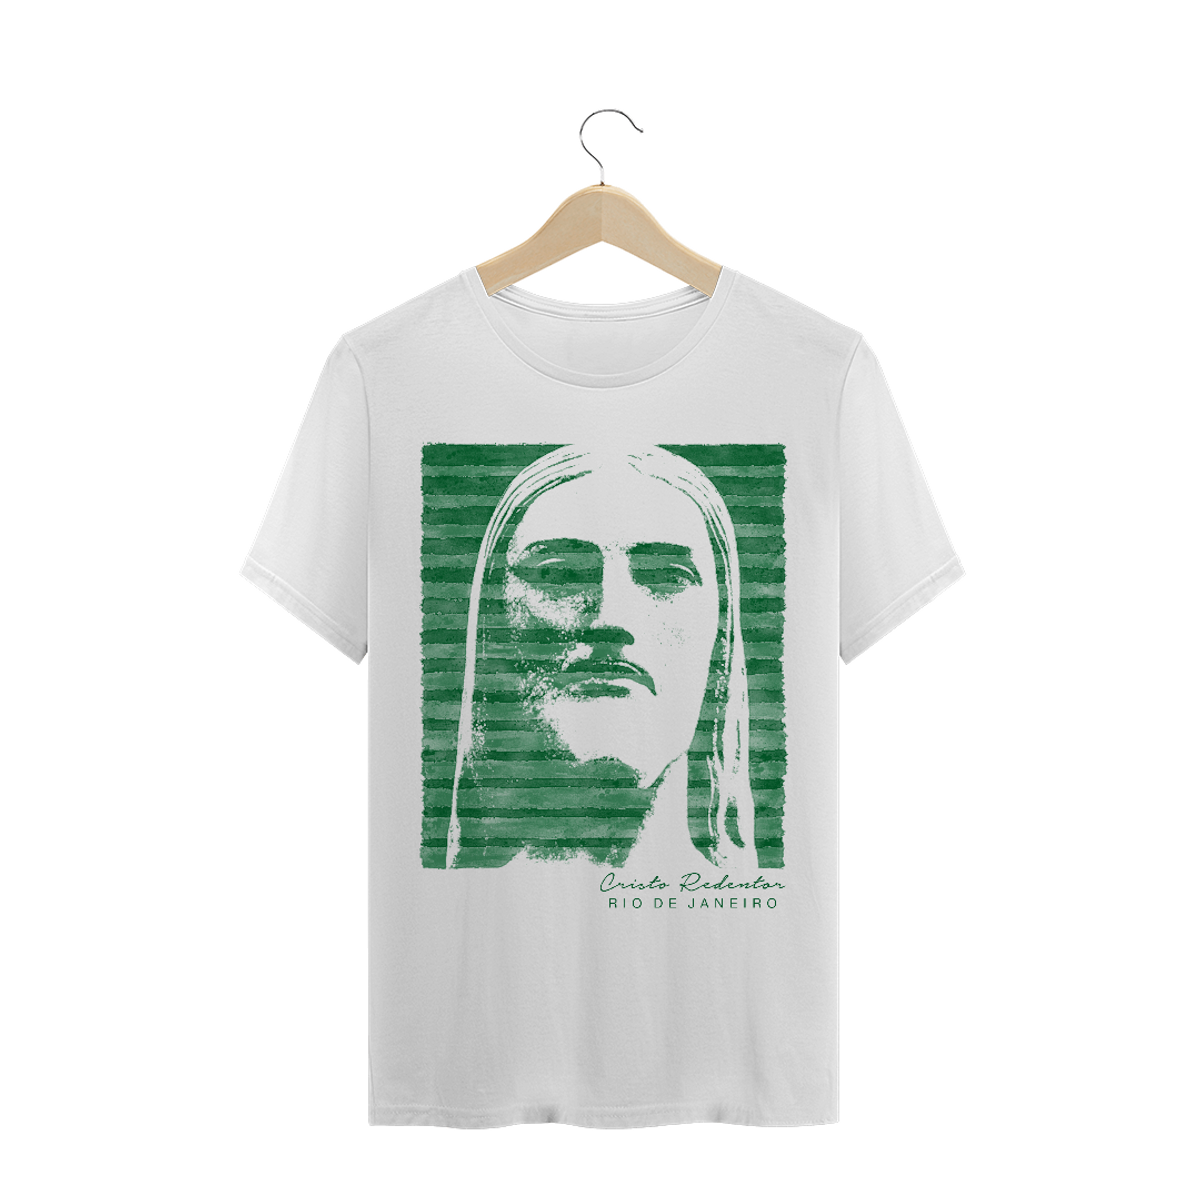 Nome do produto: Camiseta Masculina Cristo Redentor listras verdes